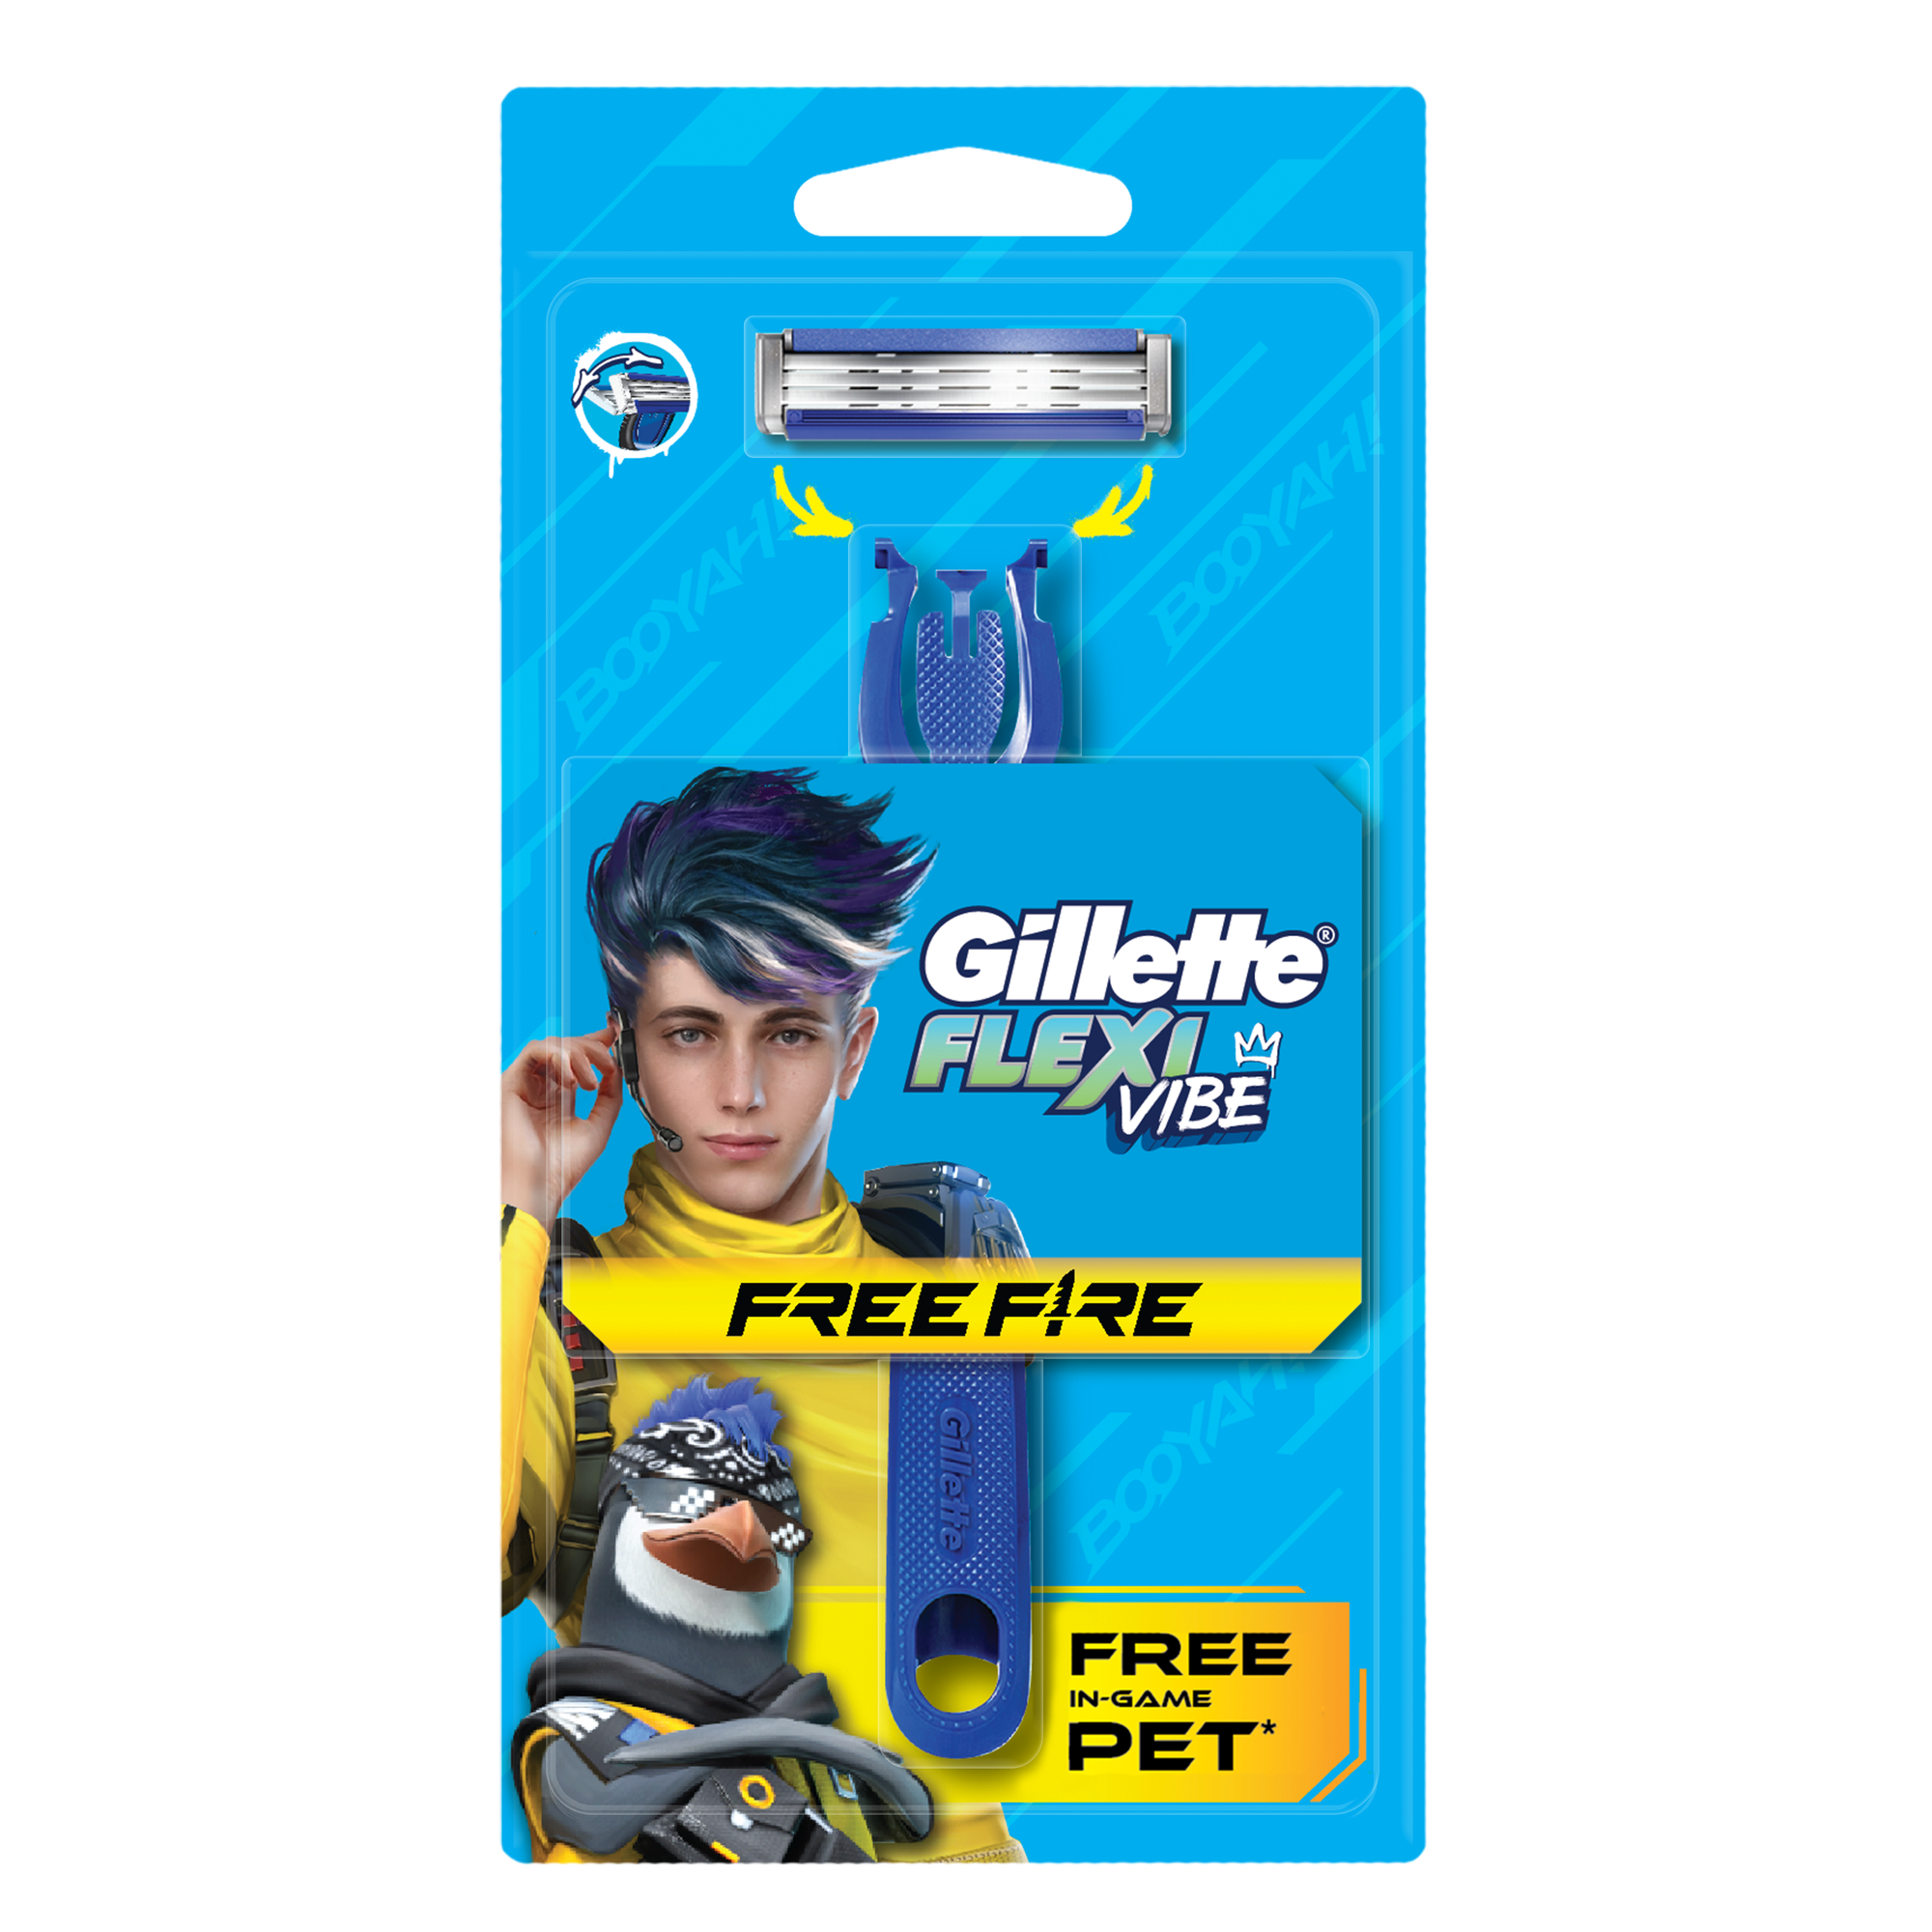 Gillette ra mắt dao cạo phiên bản Free Fire – Khuôn mặt tự tin sẵn sàng chiến đấu- Ảnh 1.